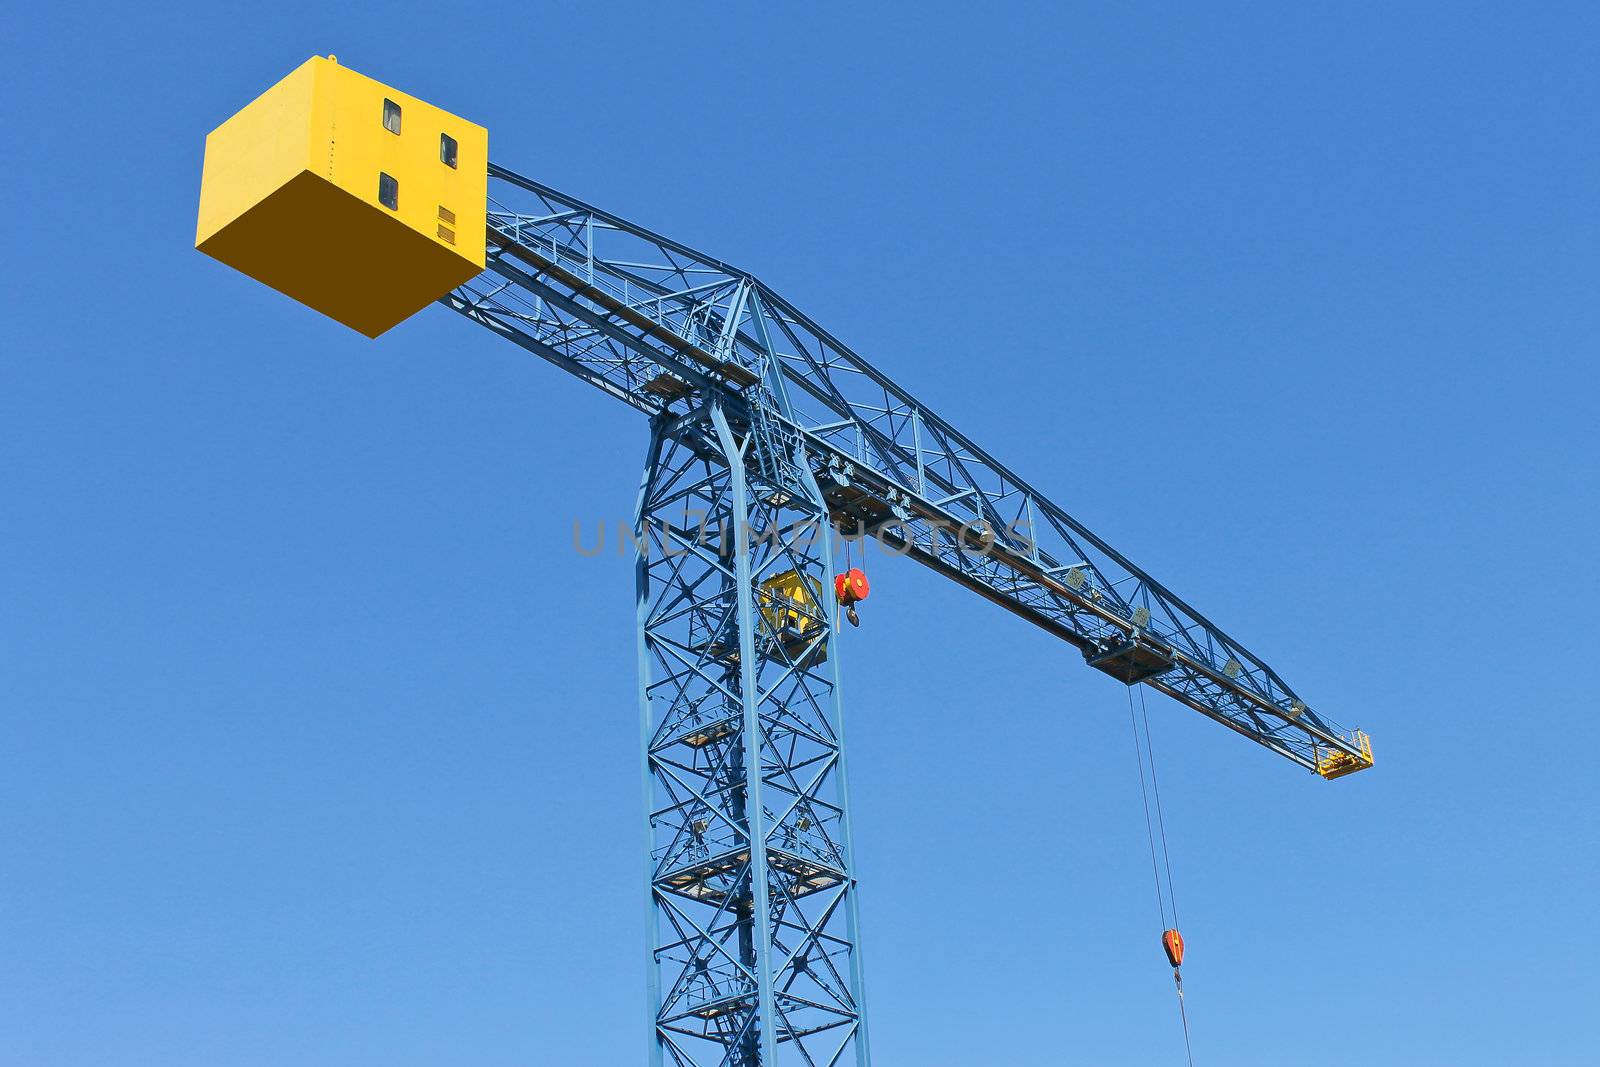 Shipyard crane against the blue sky